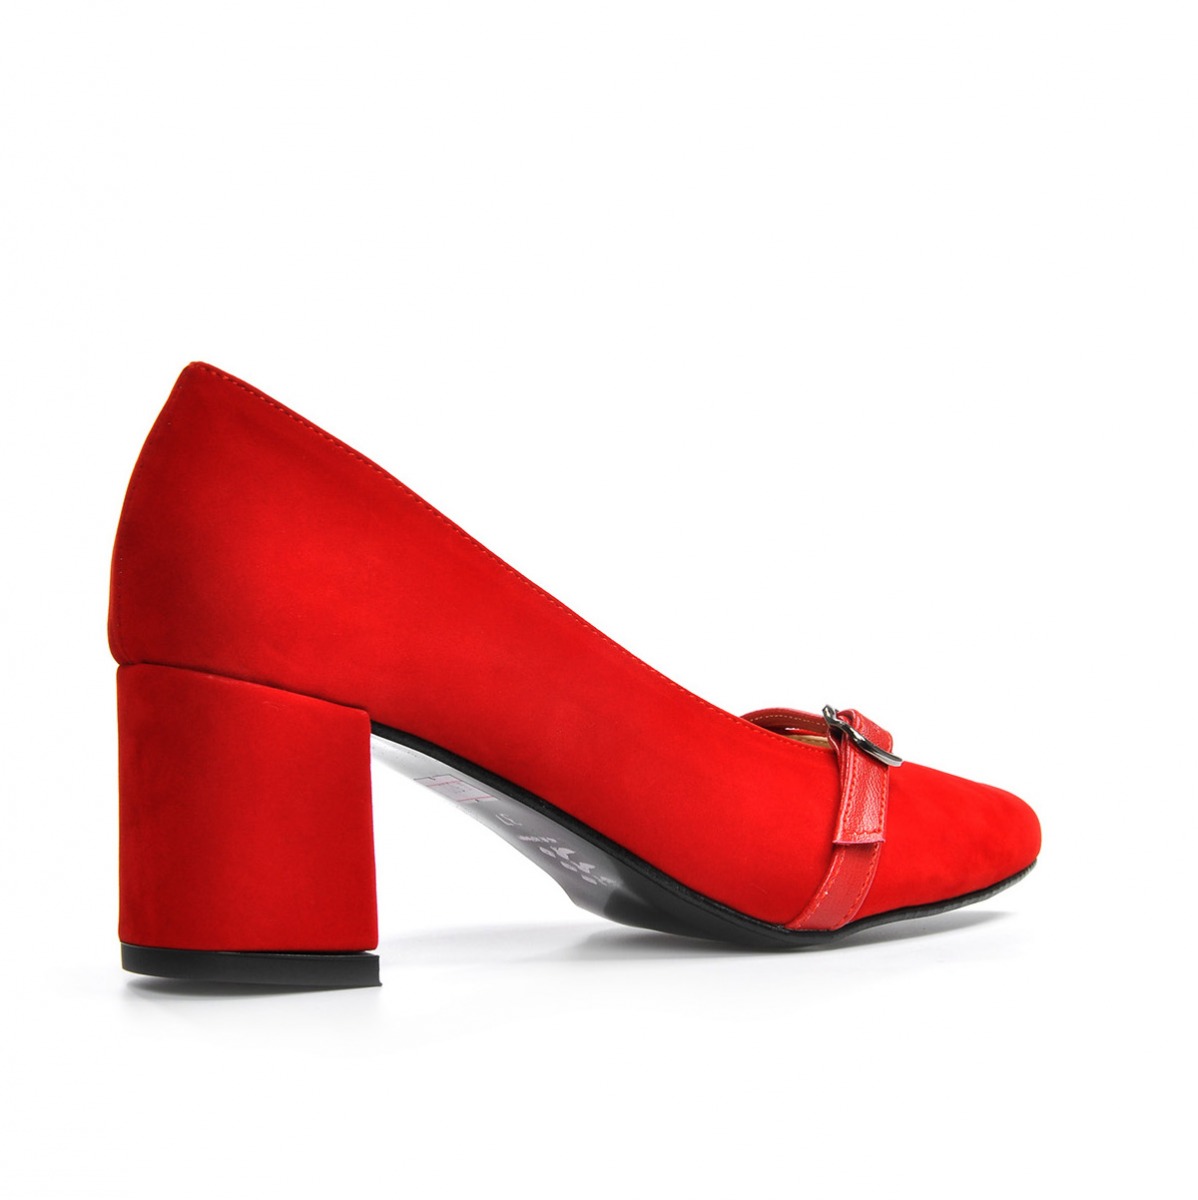 Flo Kadın  Kırmızı-Süet Klasik Topuklu Ayakkabı VZN19-110K. 5